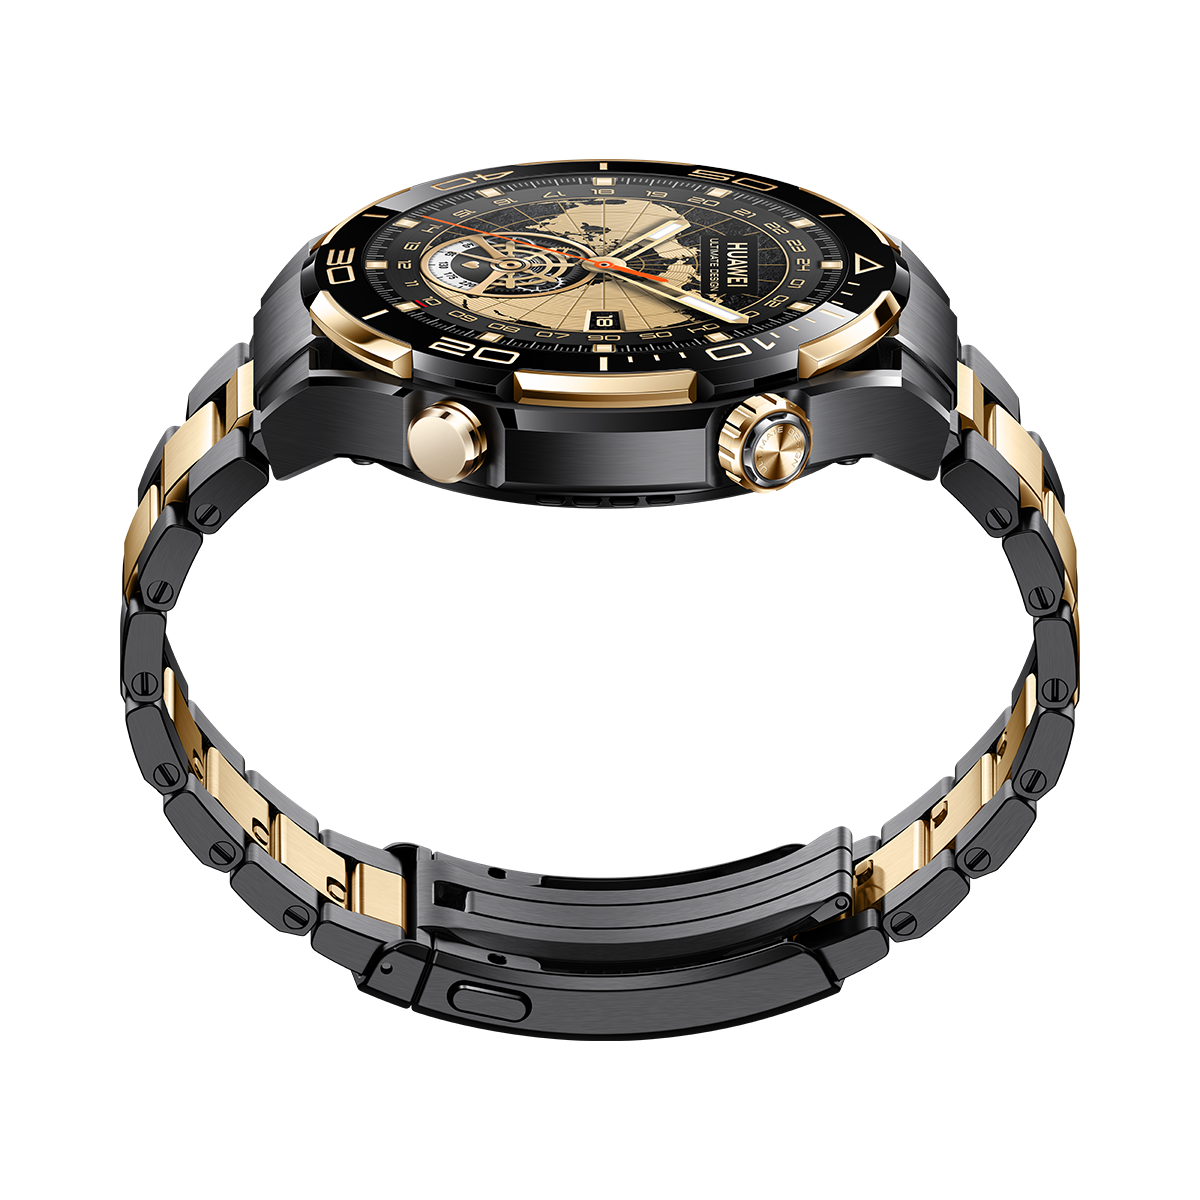 Huawei Watch Ultimate Design piyasaya sürüldü